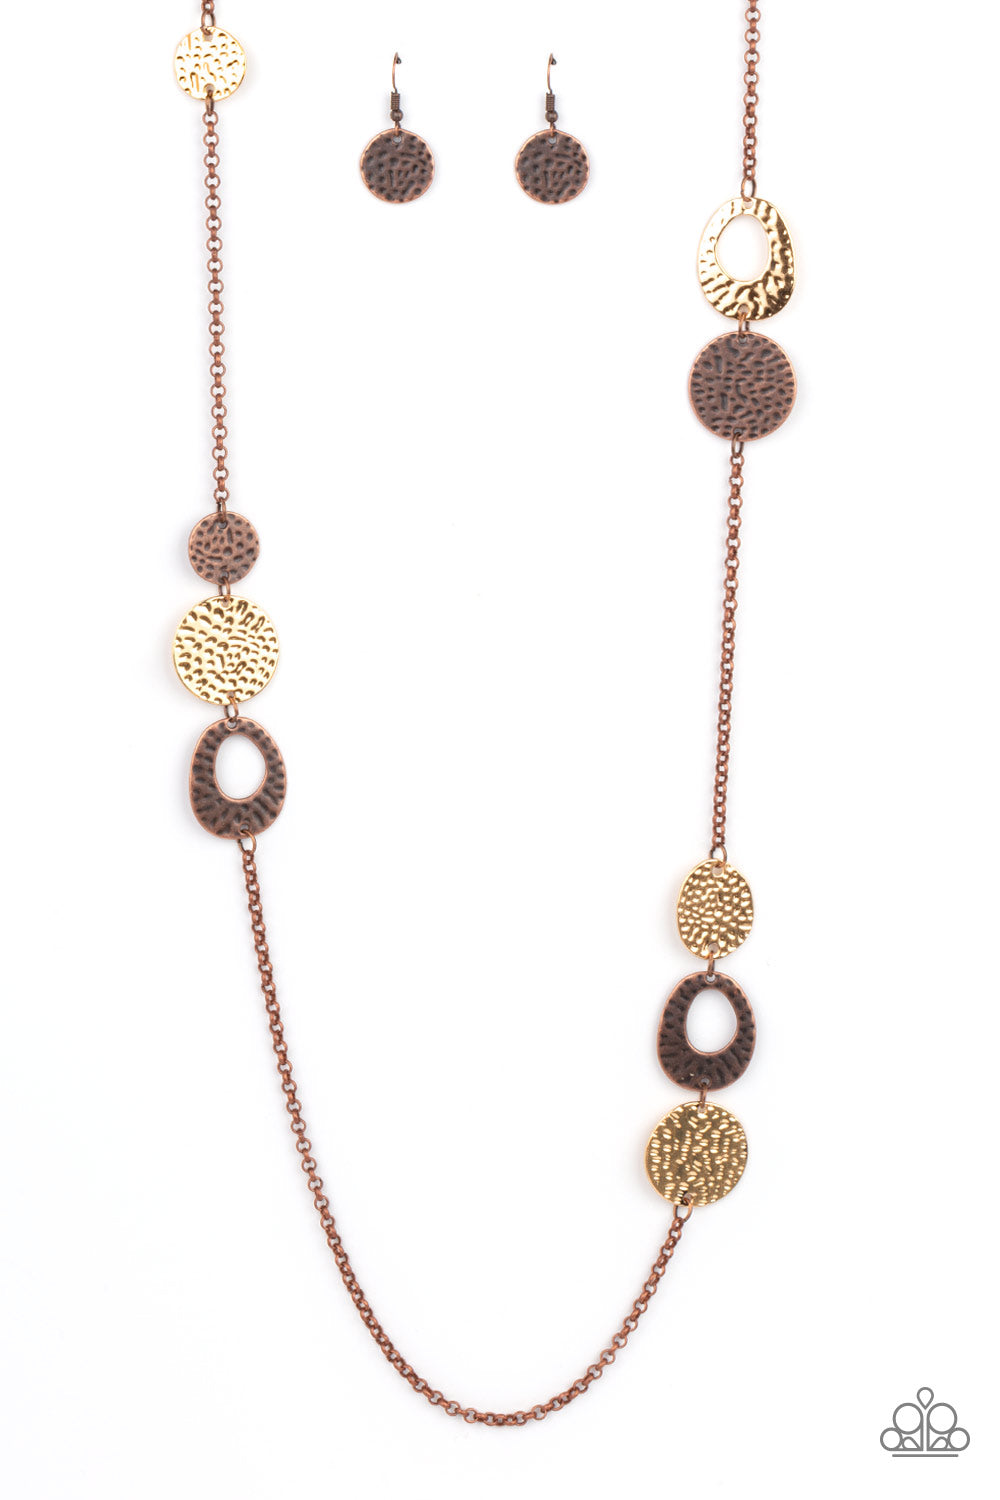 Gallery Guru - Copper/Gold necklace